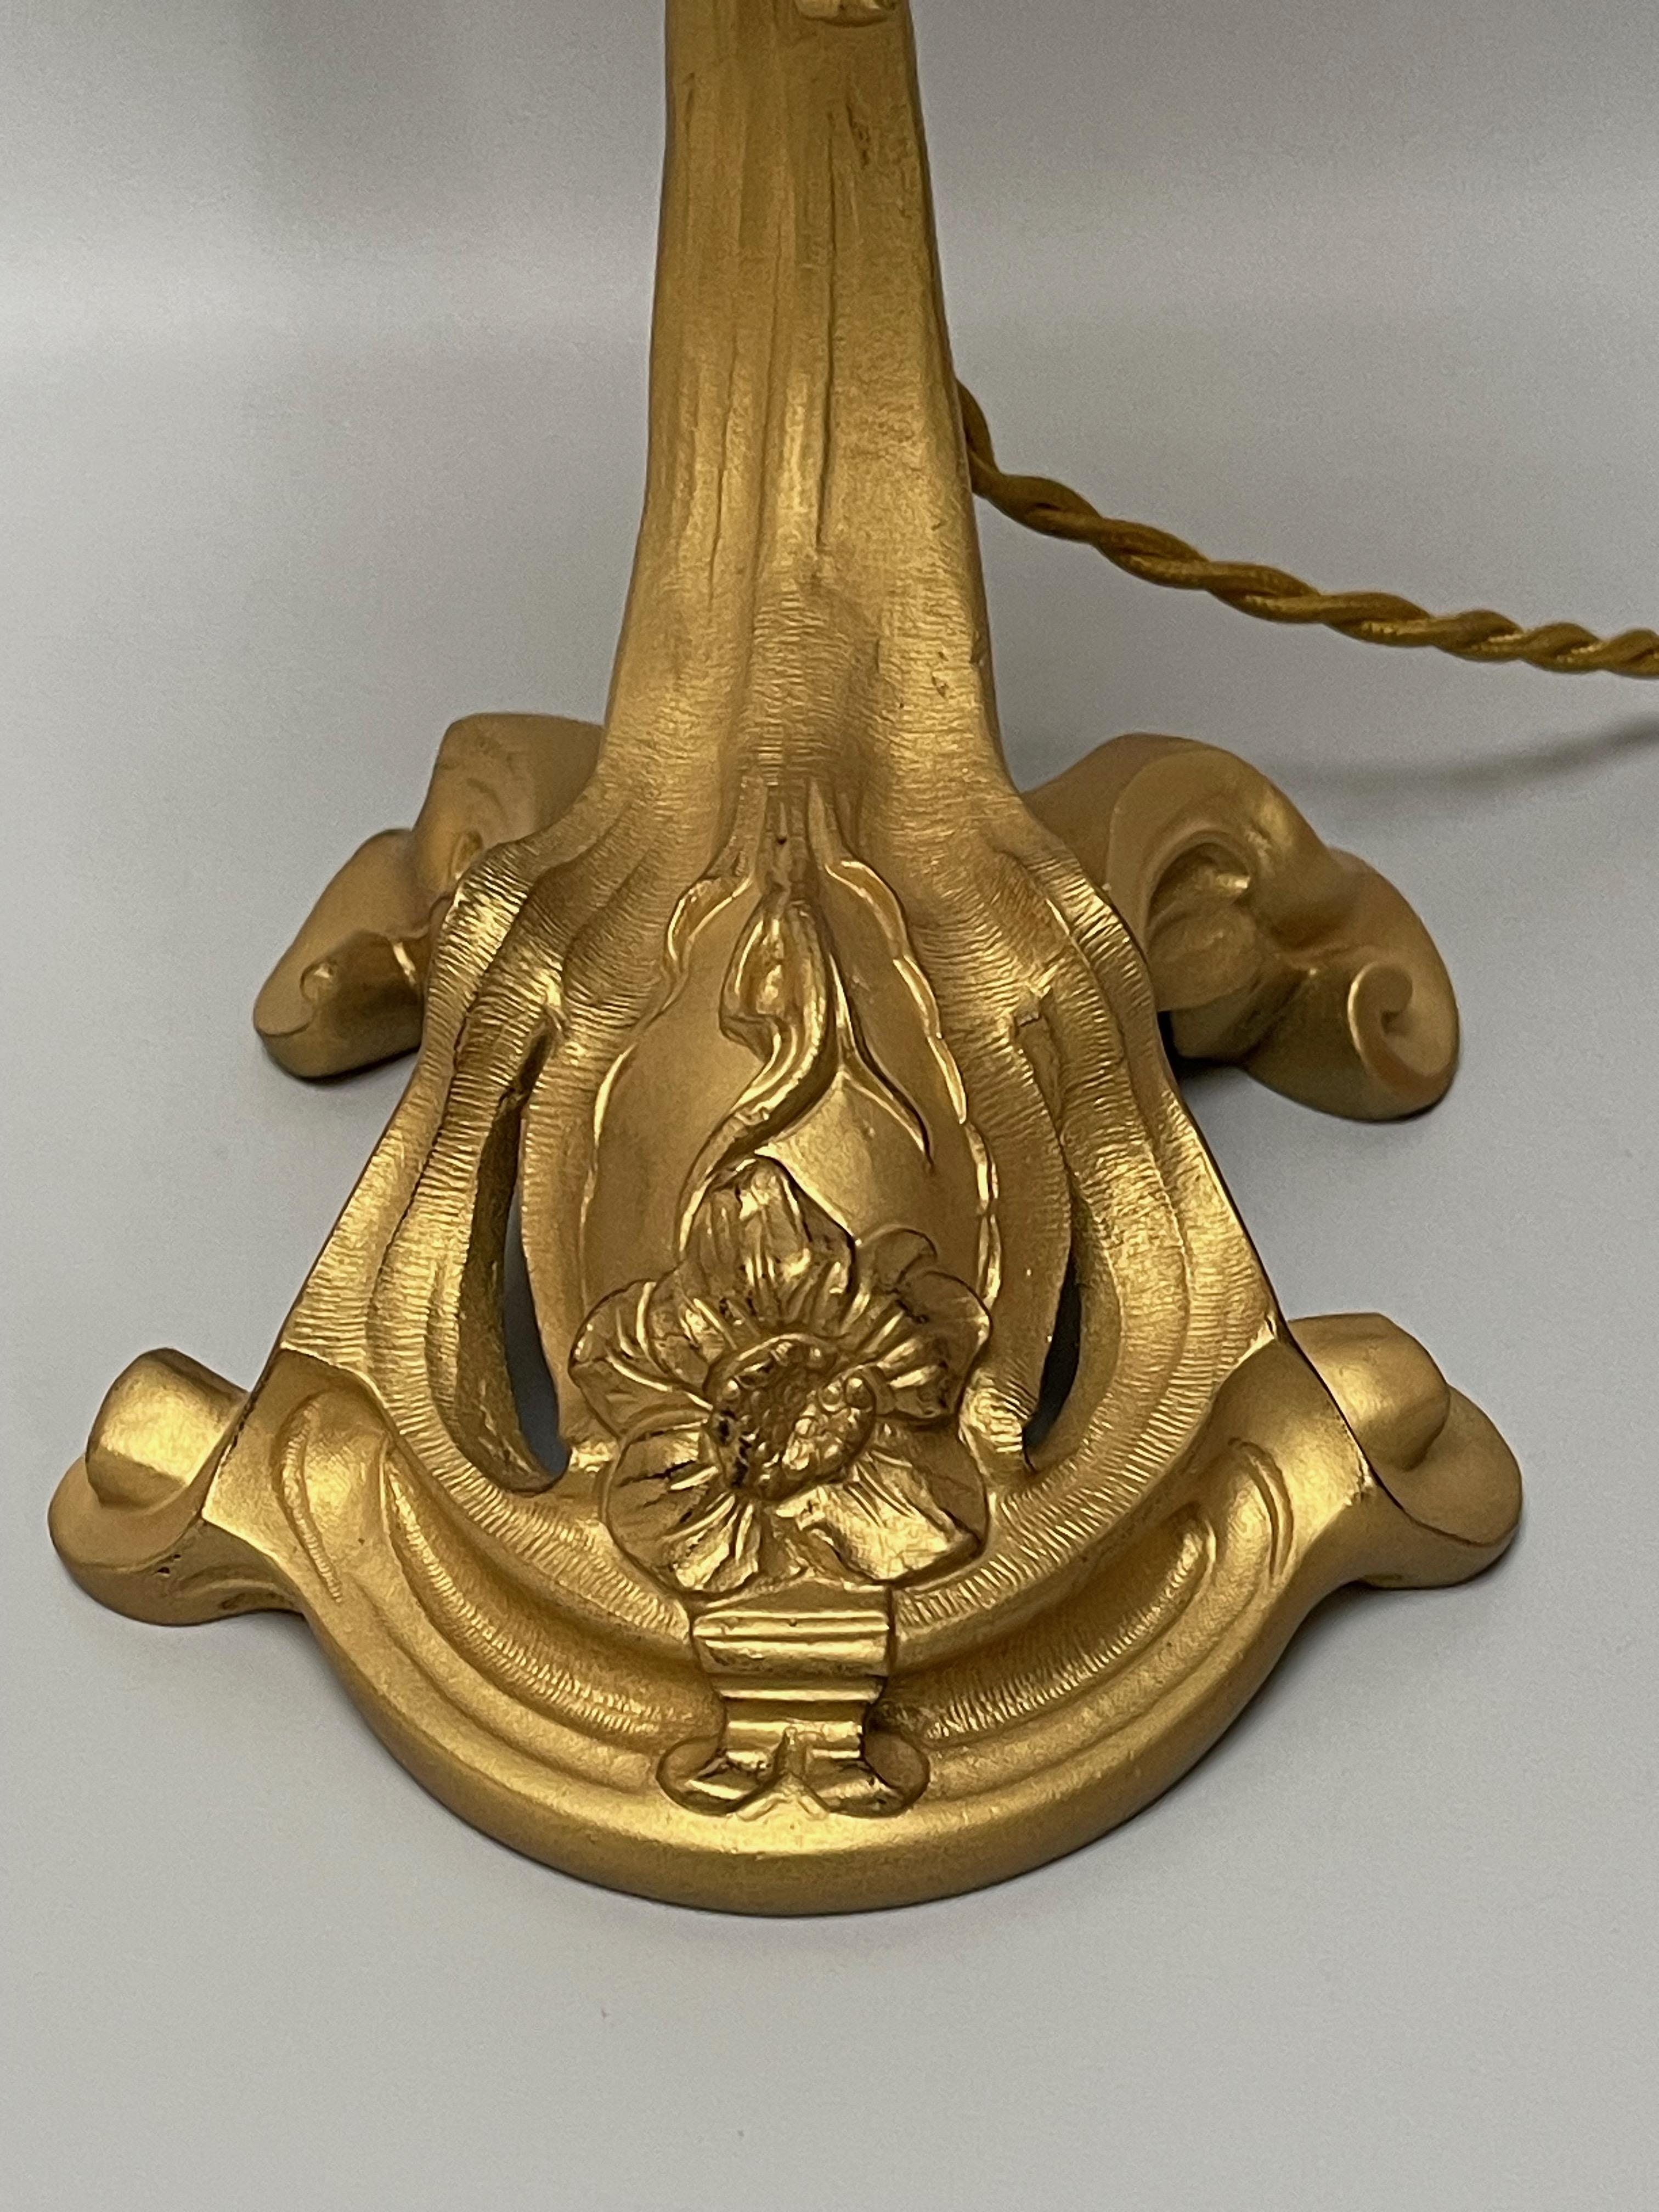 Lampe en bronze doré vers 1900, probablement de Majorelle exécutée par Victor Saglier. Estampillé sur le pied VS.
Tulipe en pâte de verre signée Daum Nancy.
Lampe électrifiée et en parfait état.

Hauteur totale : 38,5 cm - 15,15 in
largeur :